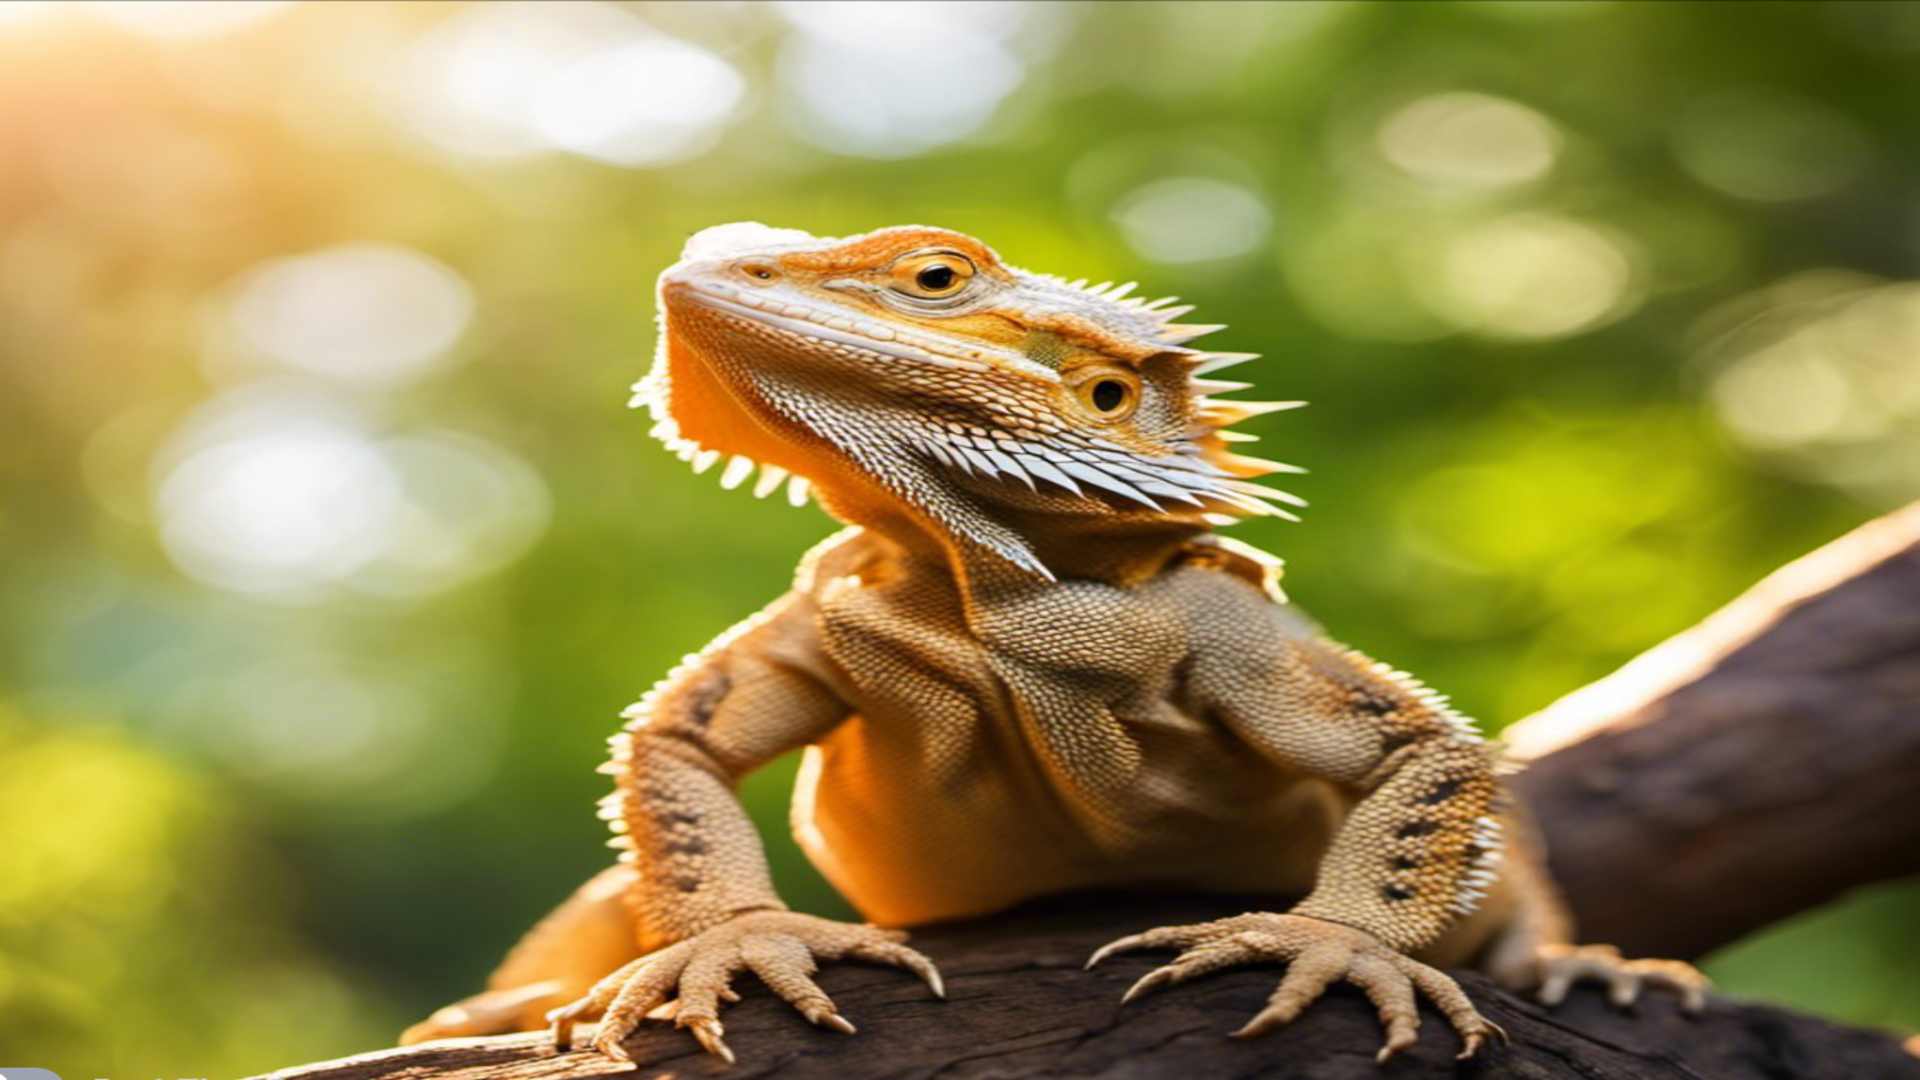 How to avoid bearded dragon bite